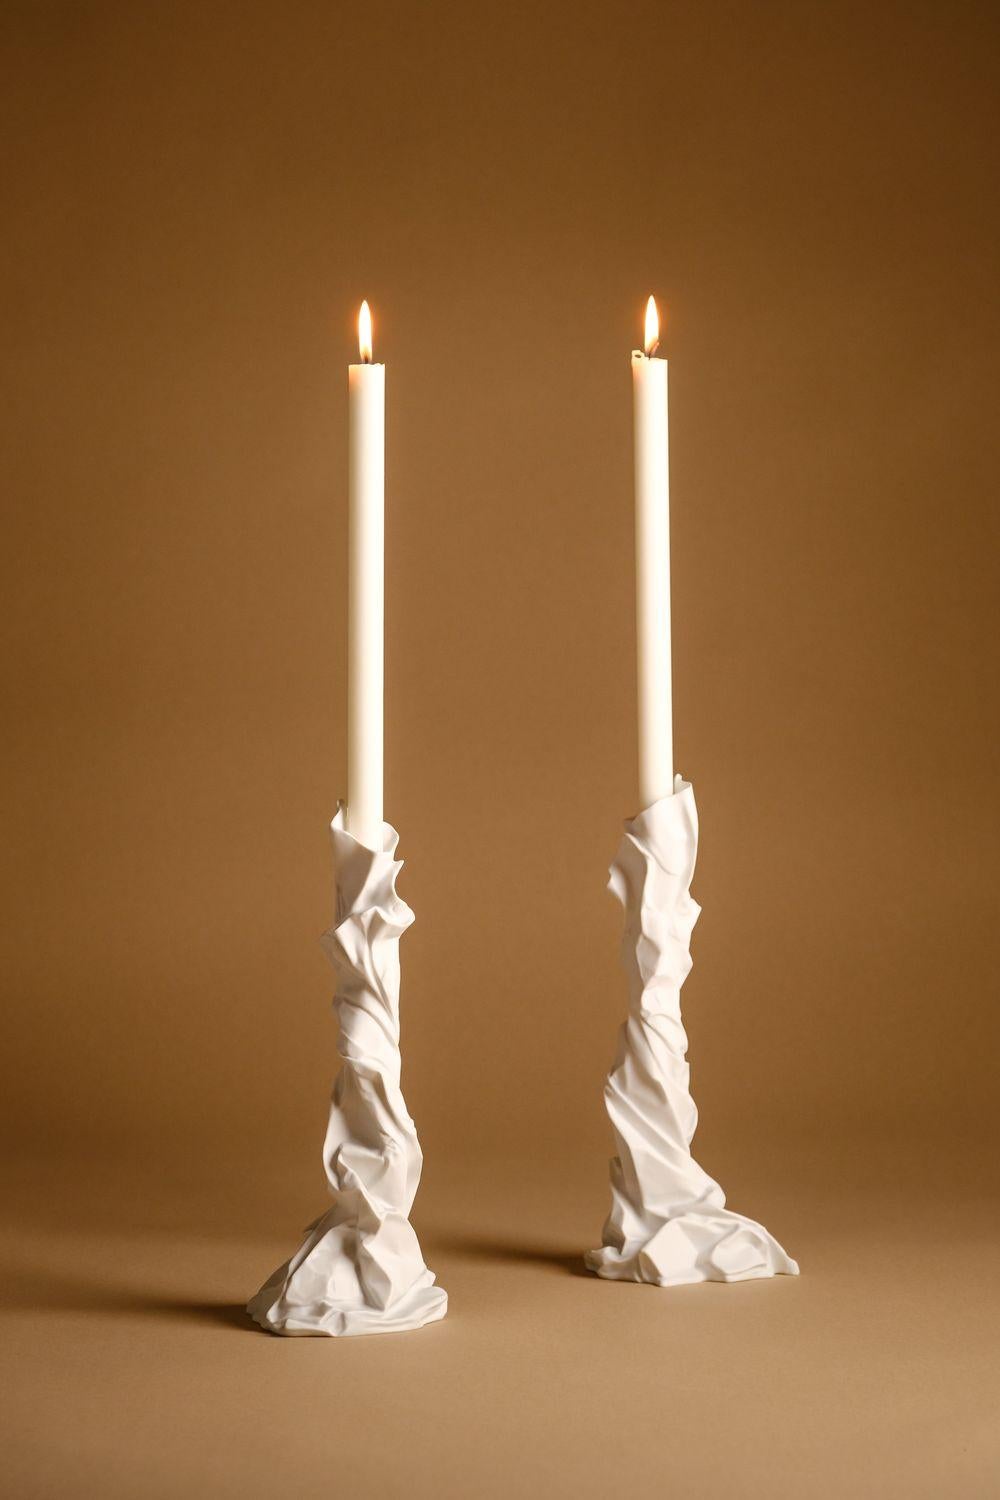 Charta Kerzenständer von Studio Palatin
Abmessungen: H 33,5 x T 16 cm
MATERIAL: Biskuitporzellan.

Die Inspiration für die Collection'S Charta Alba kam der Künstlerin durch eine Reihe von Skulpturen, die aus braunem Geschenkpapier aus einem